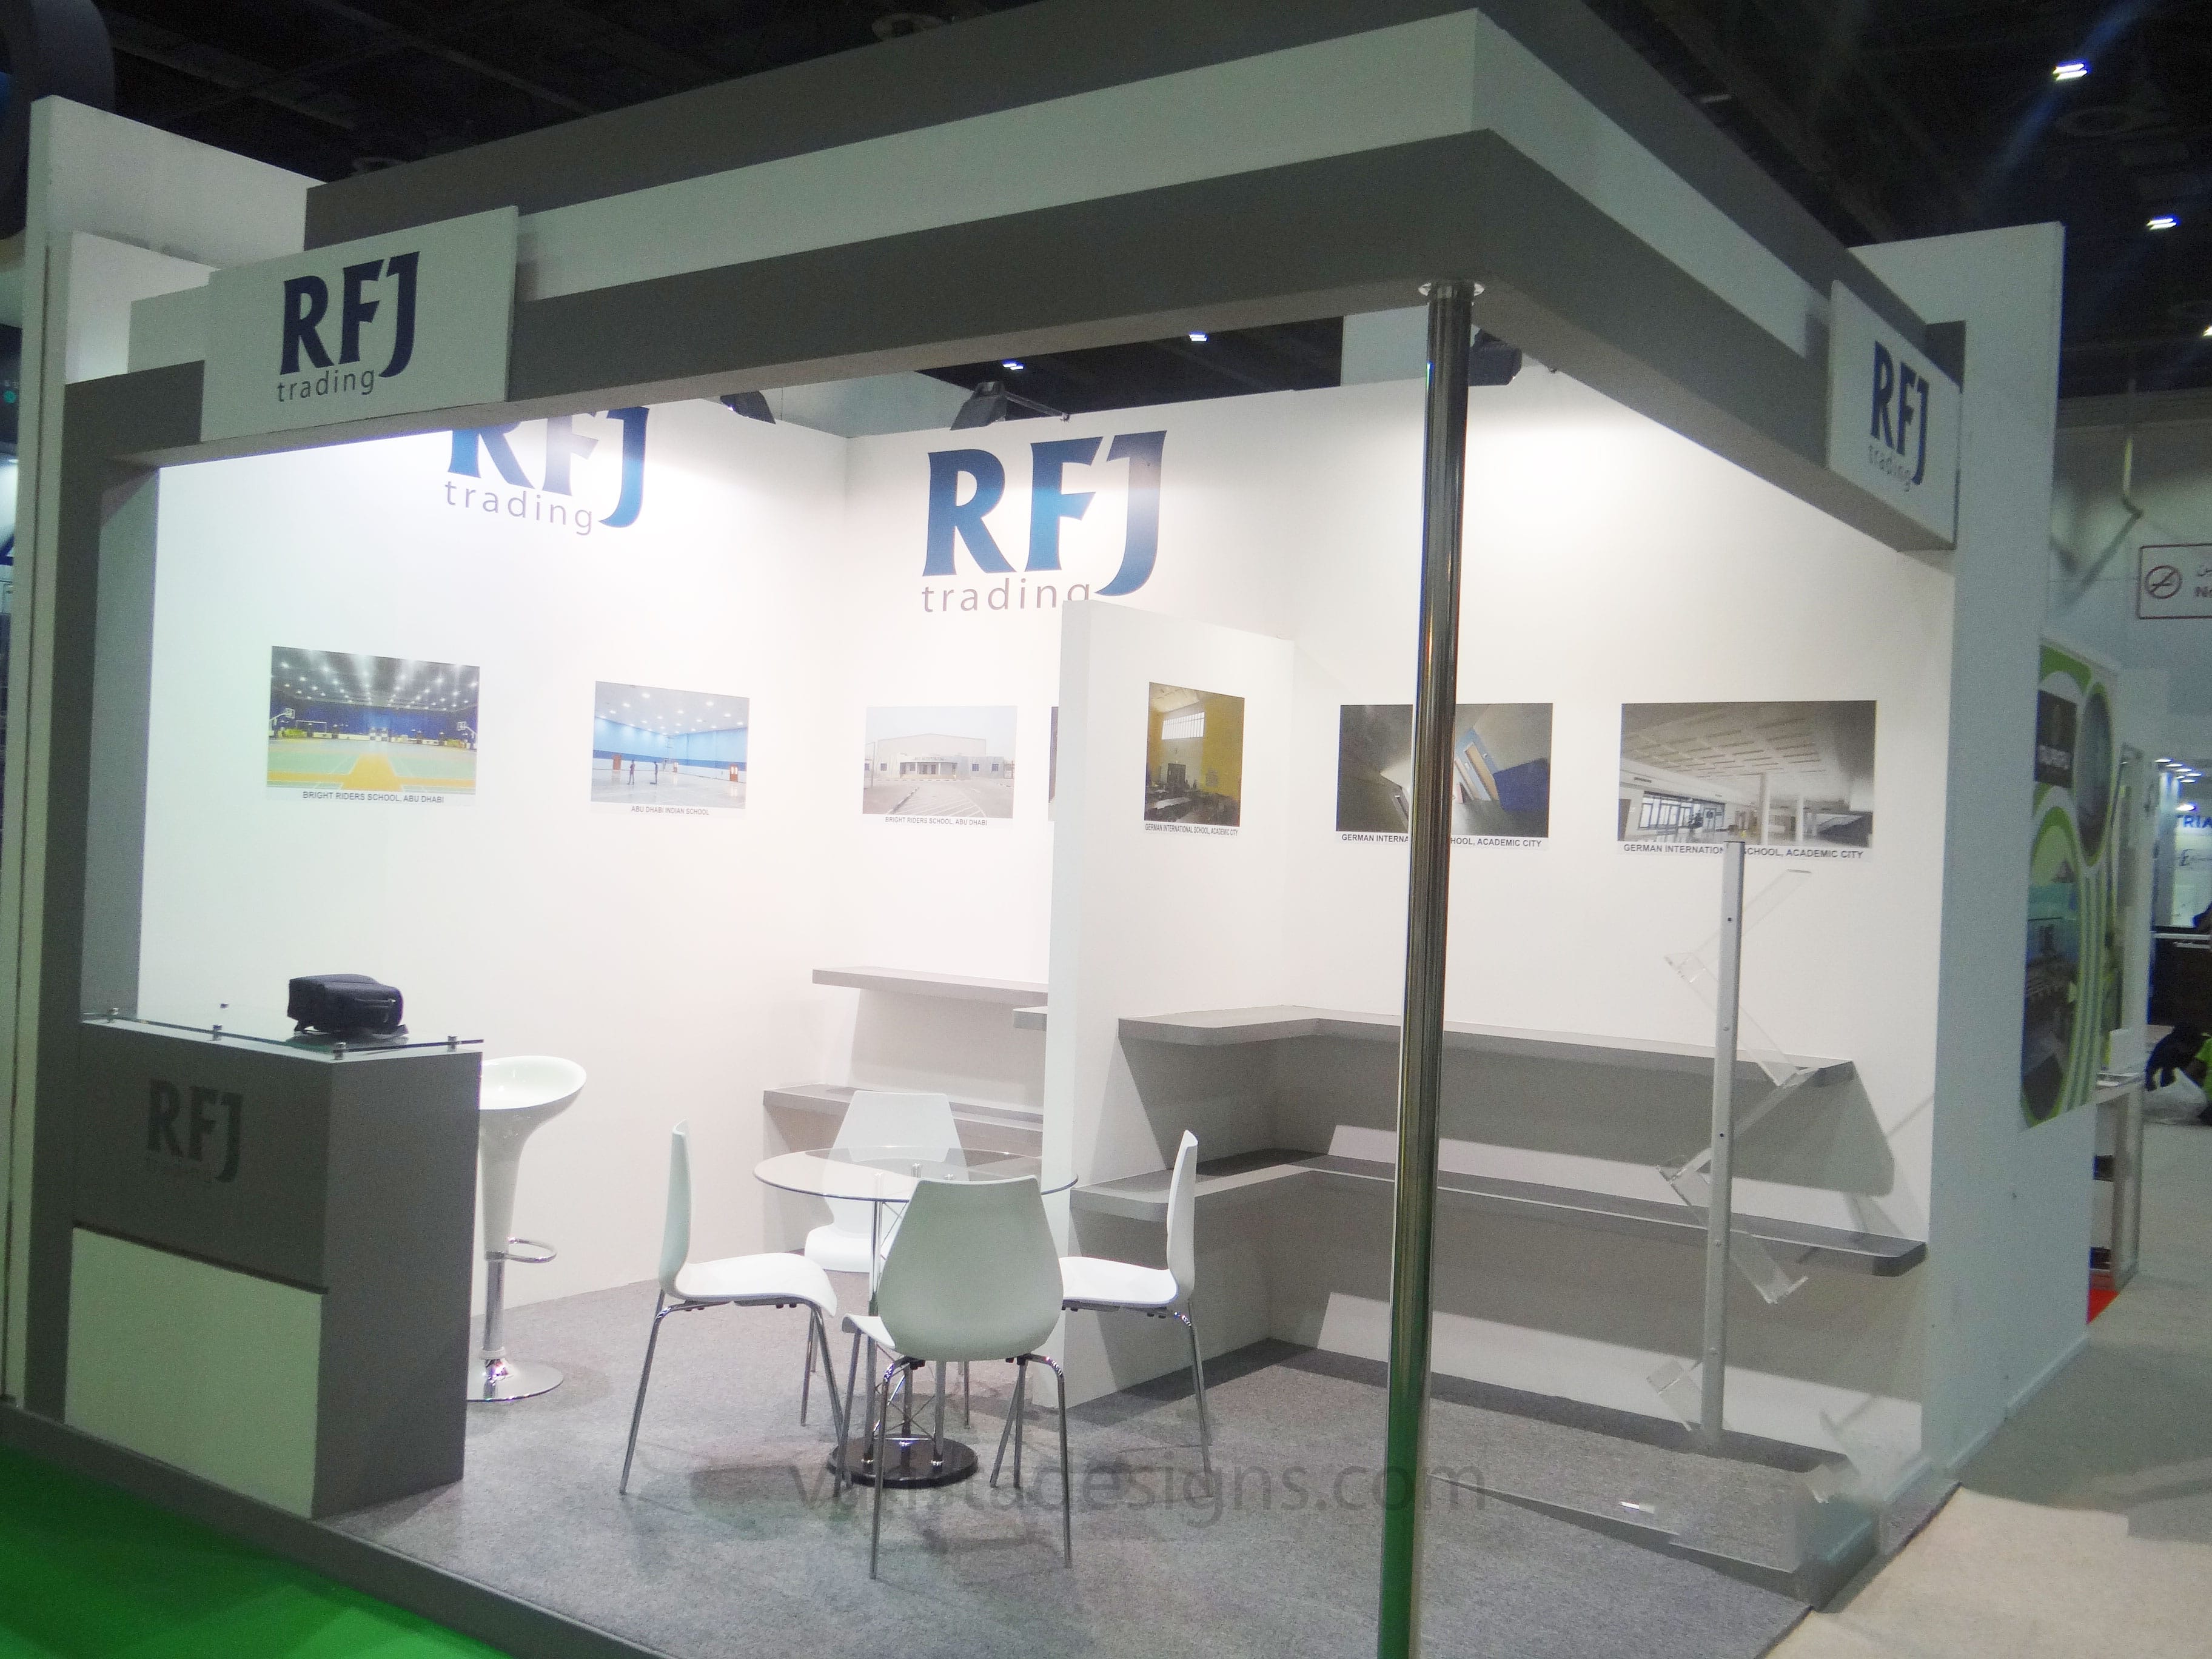 varistadesigns RFJ trading Exhibition Stand